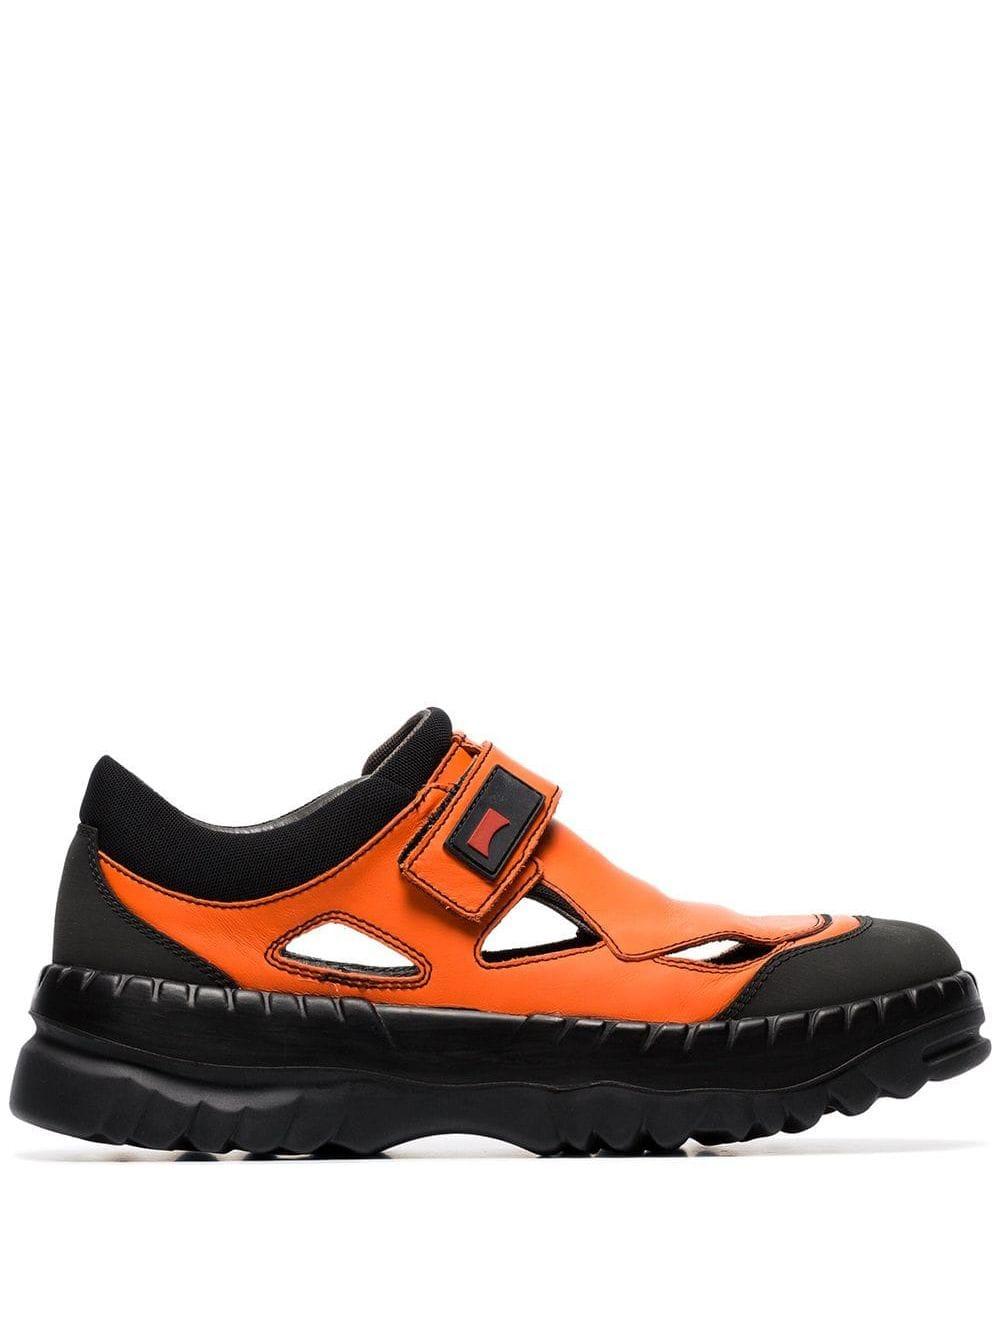 Camper Synthetic X Kiko Kostadinov Orange Velcro Strap Sneakers for Men ...